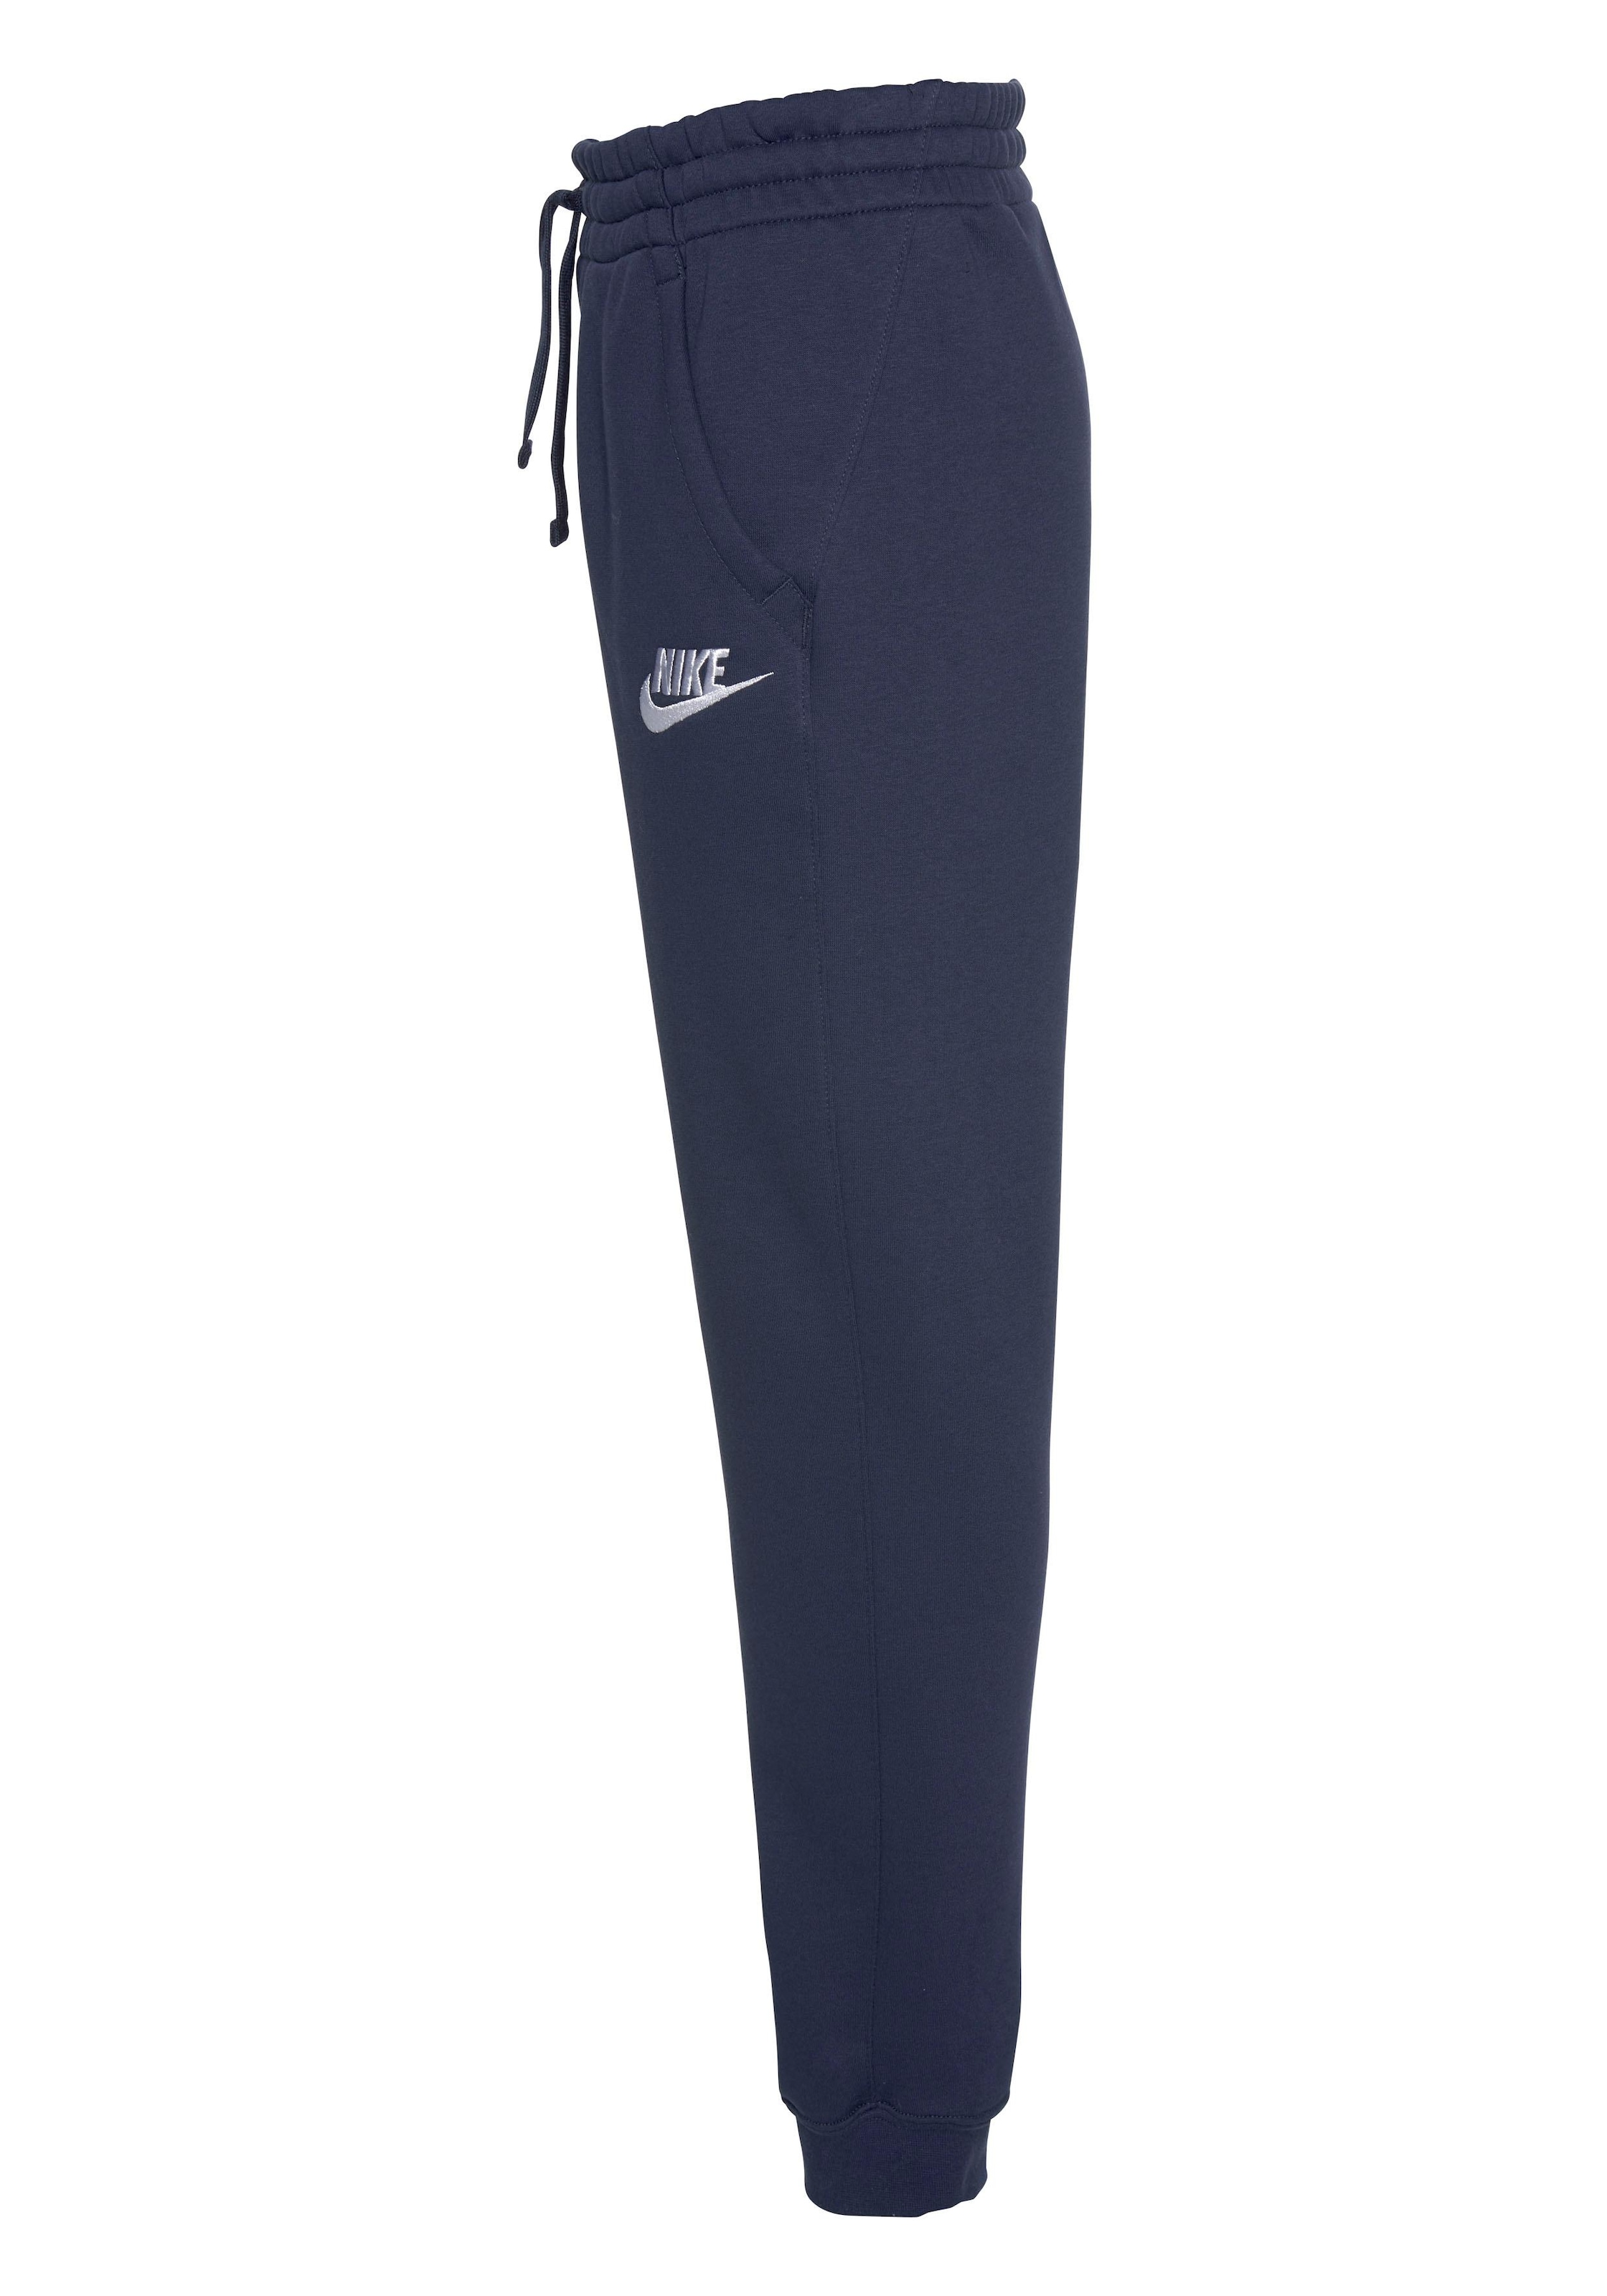 ✌ »B NSW en Sportswear Acheter FLEECE JOGGER Jogginghose ligne PANT« CLUB Nike